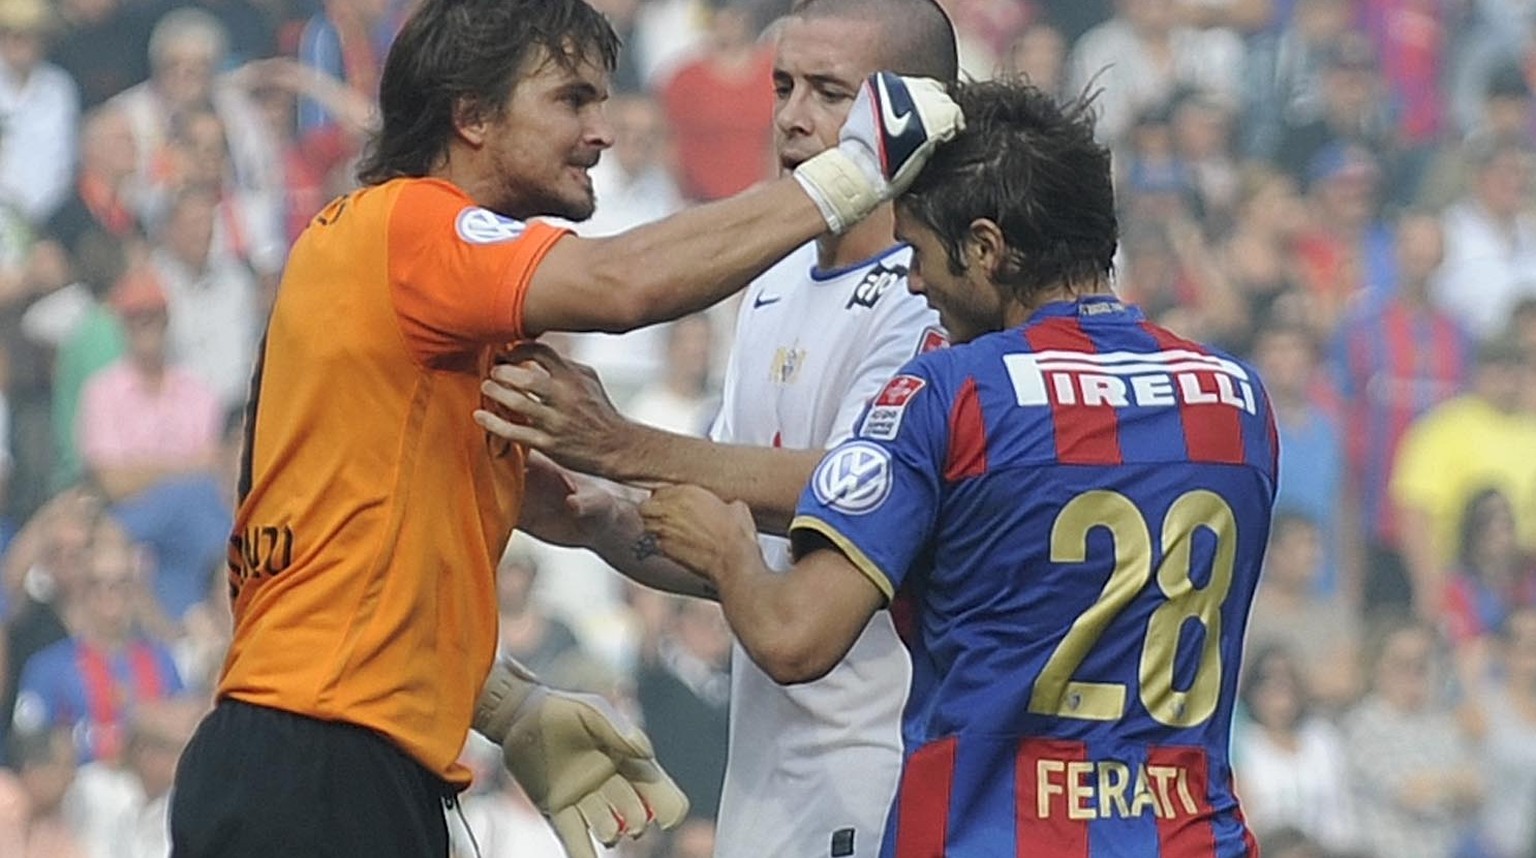 Basels Captain Franco Costanzo geht auf seinen Mitspieler Beg Ferati los und Zuerichs Eric Hassli versucht zu schlichten Andreas Meier/freshfocus